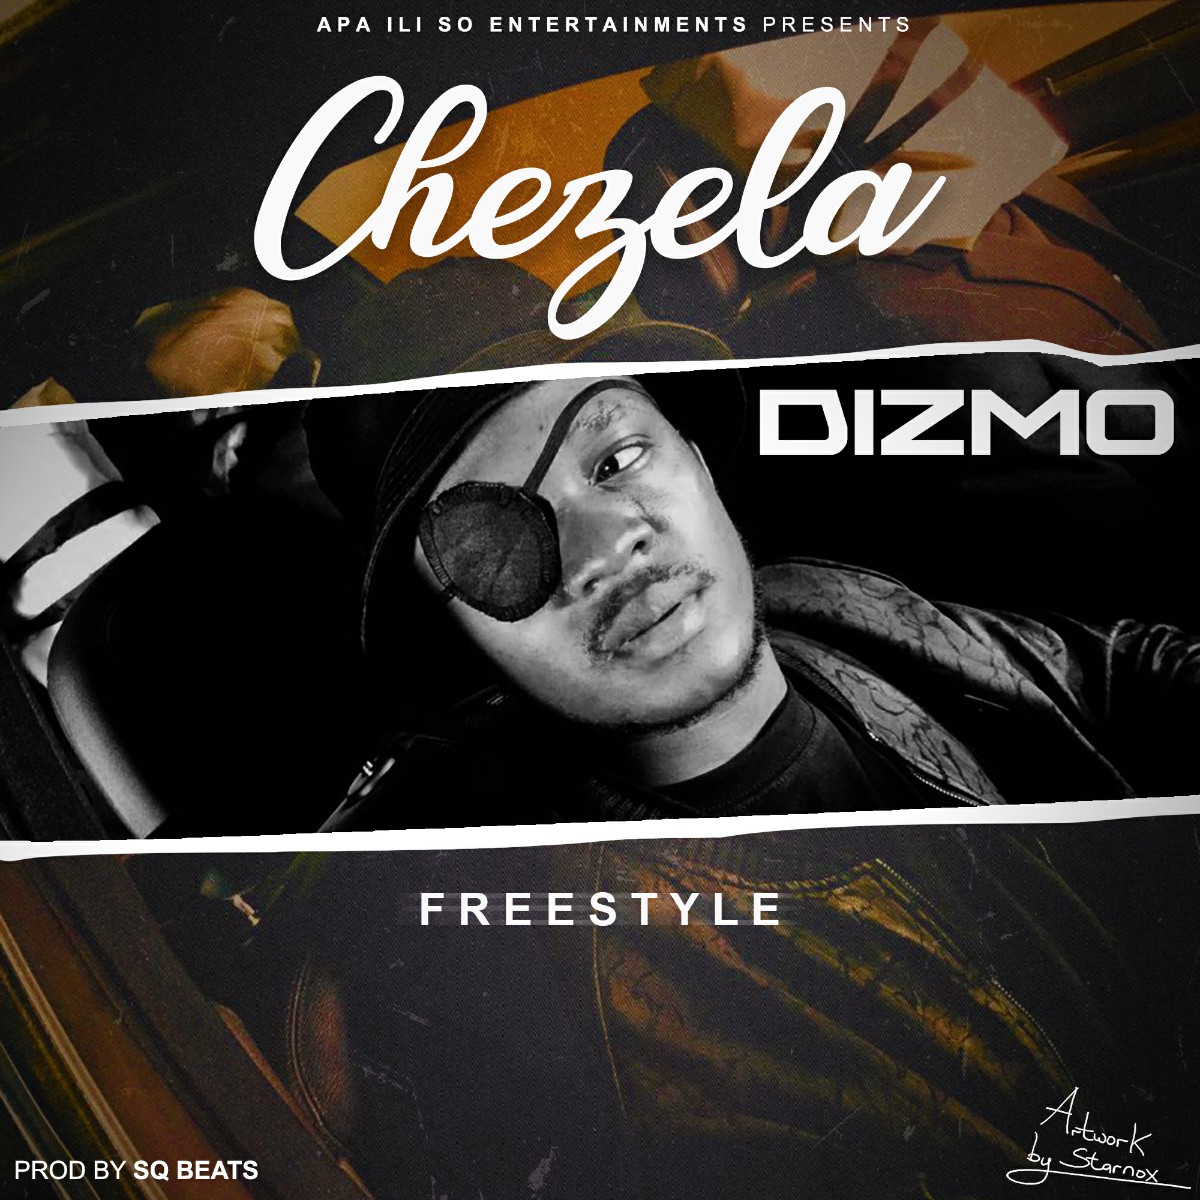 Dizmo - Chezela Freestyle (Prod. SQ Beats)